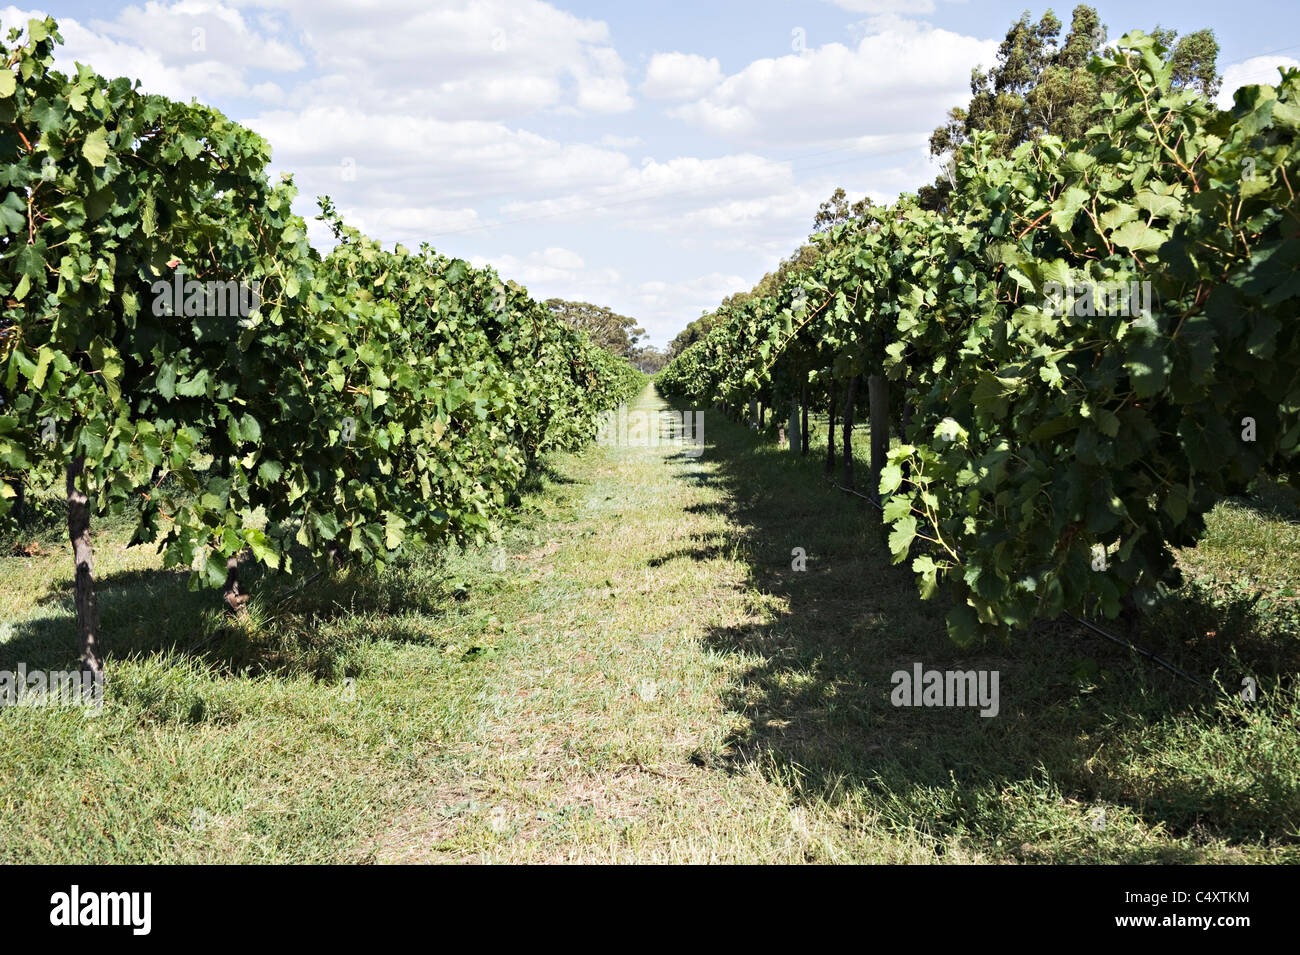 La maturation des raisins noirs sur la vigne dans un vignoble près de Padthaway dans l'Australie du Sud SA Banque D'Images